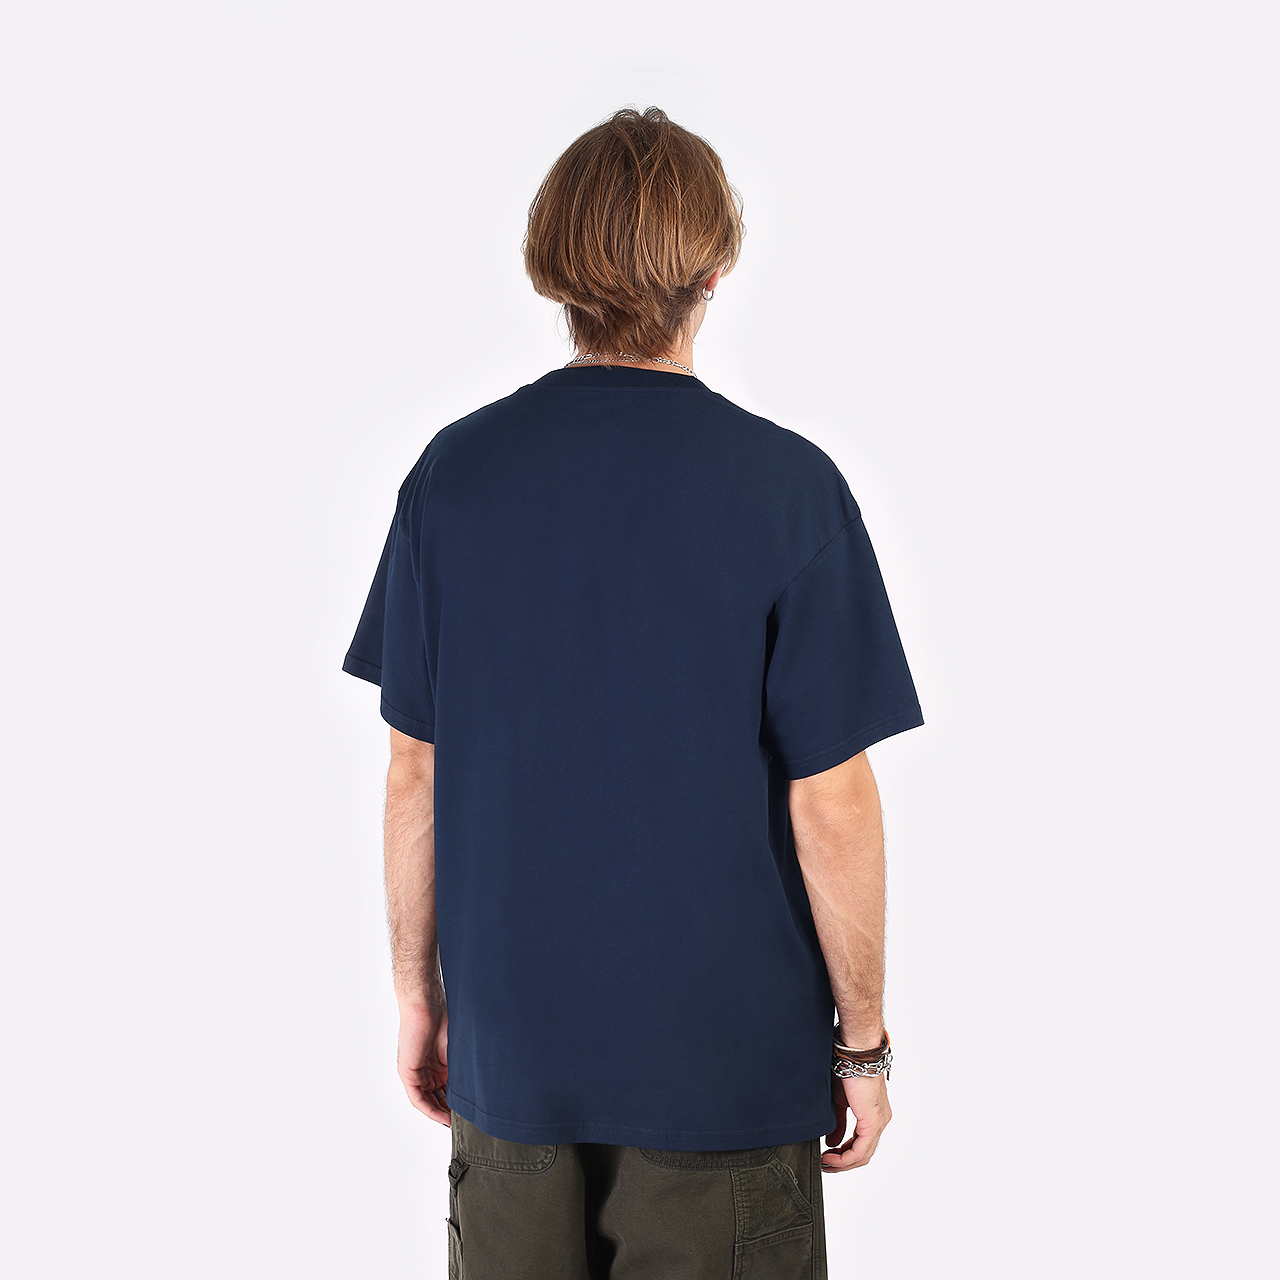 мужская синяя футболка Carhartt WIP S/S Casino T-Shirt I030171-mizar/soft yellow - цена, описание, фото 5